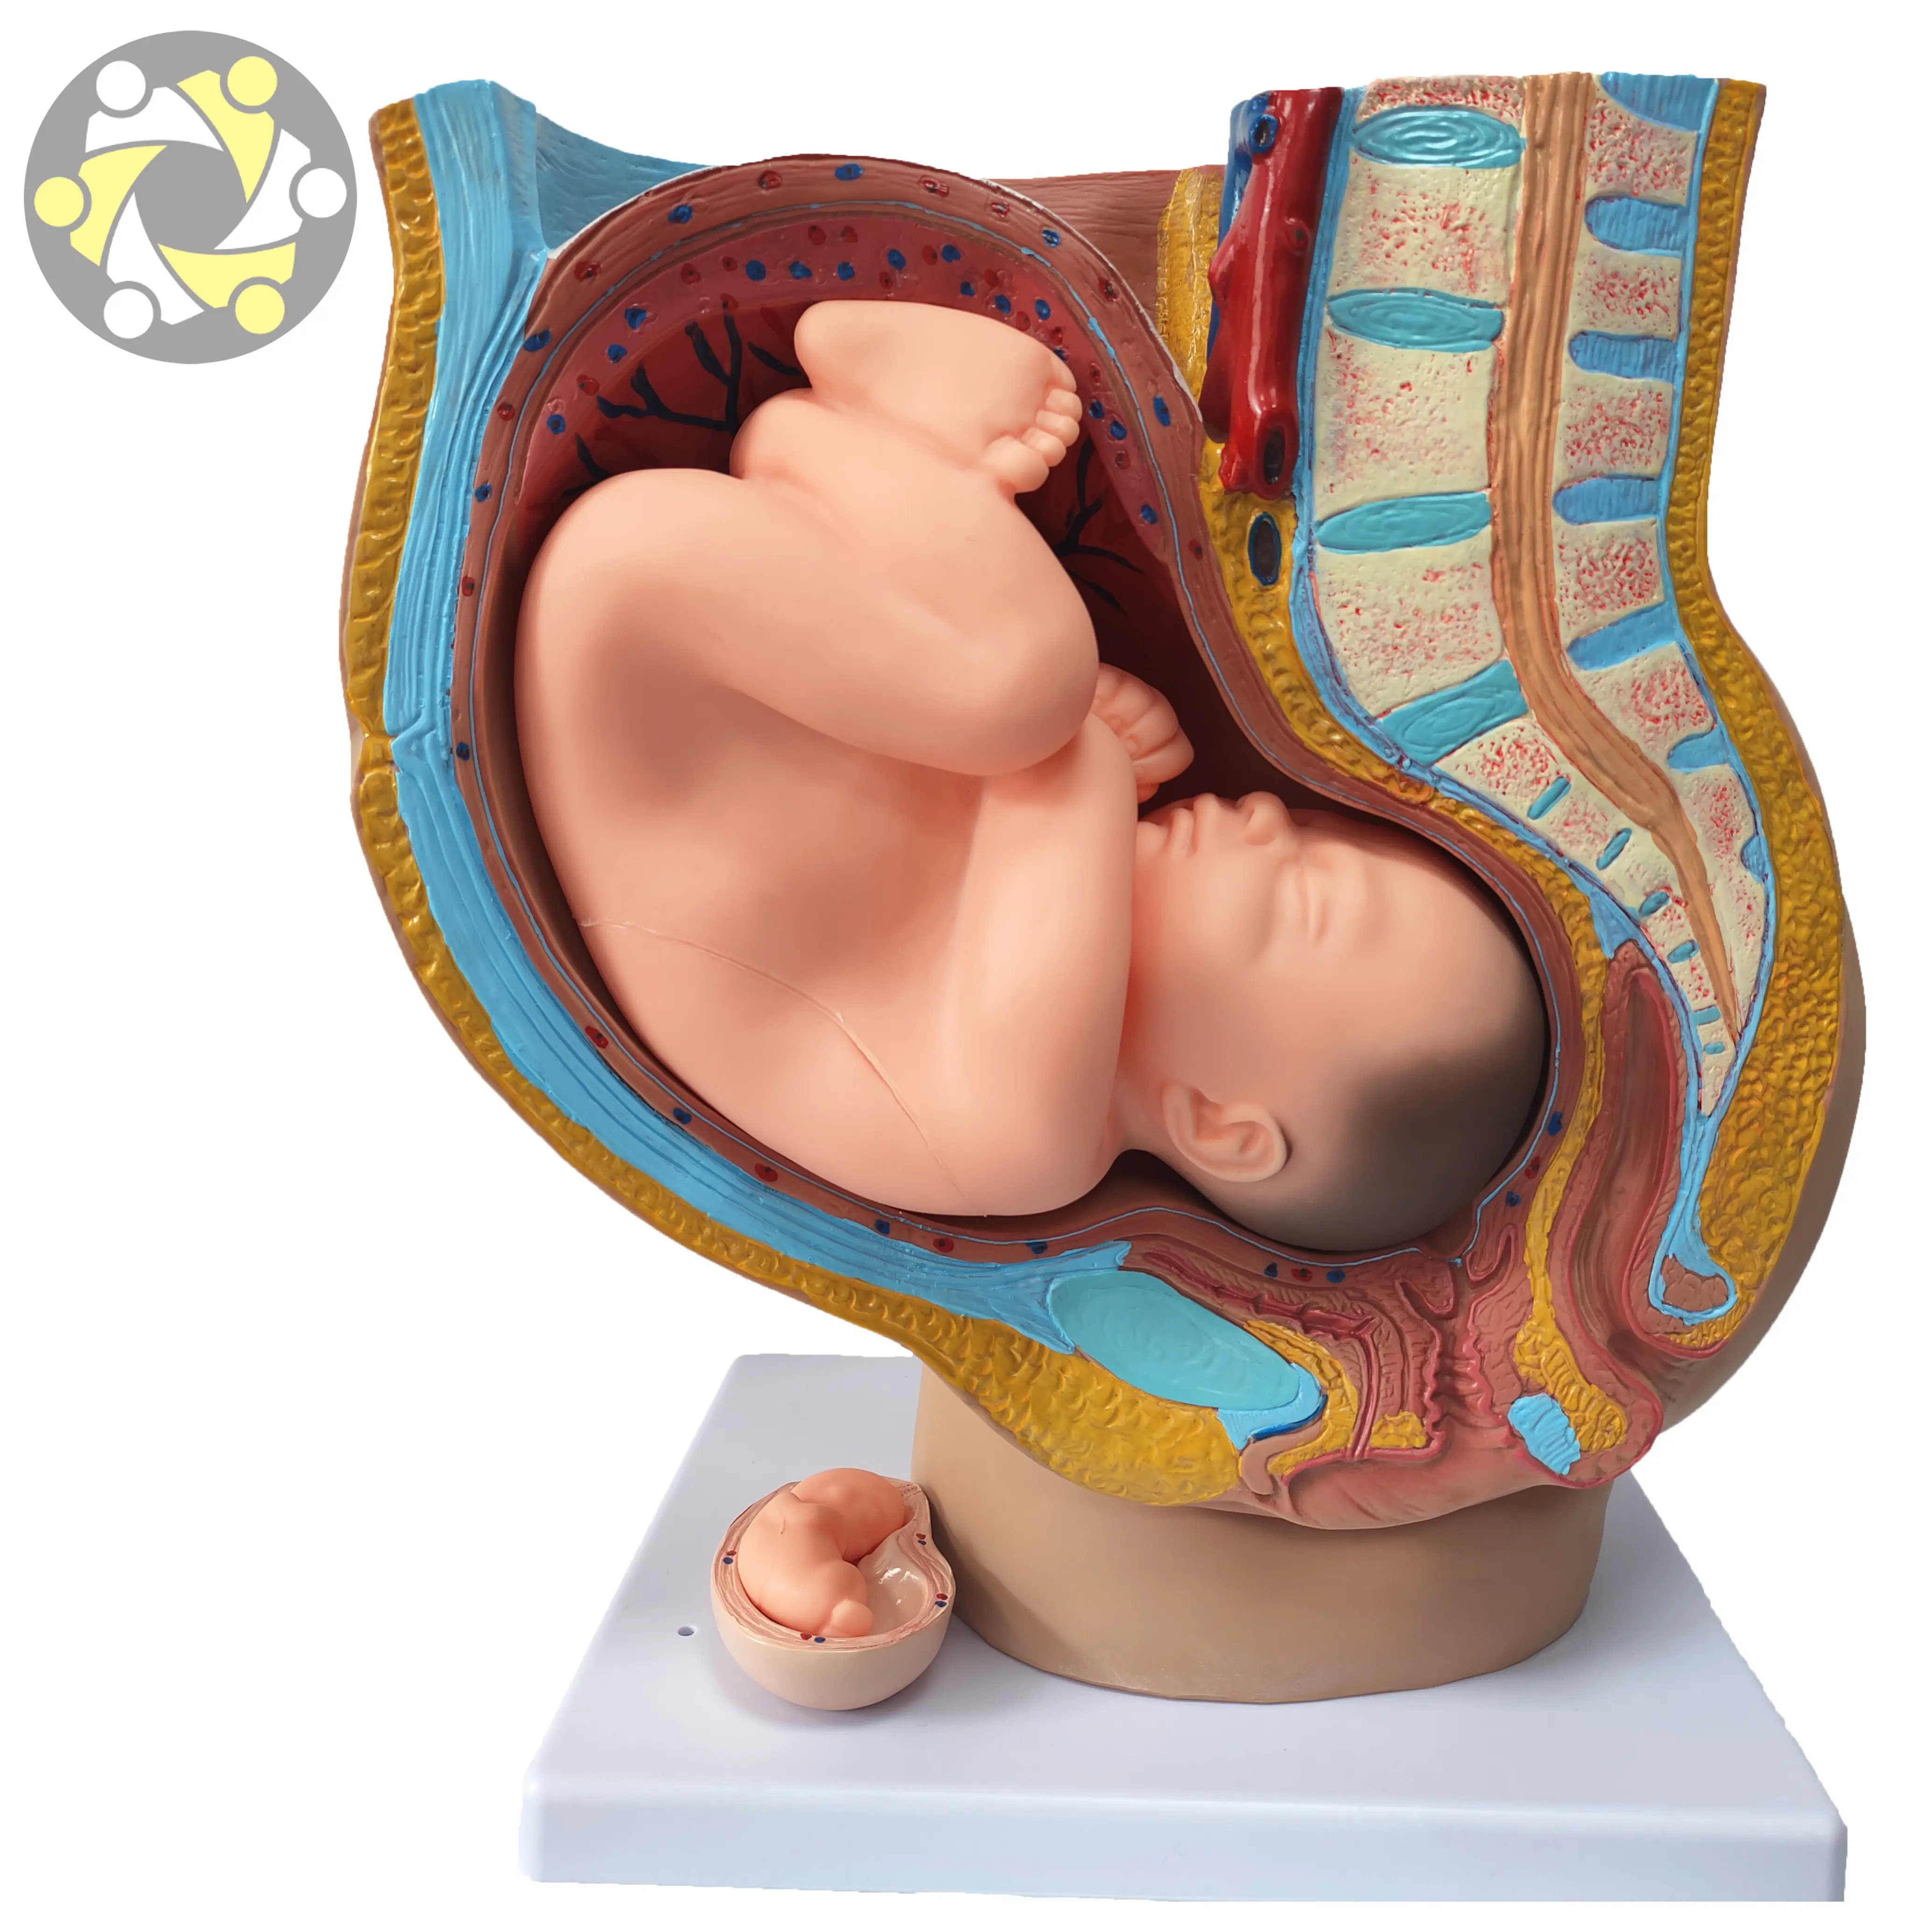 Modelli anatomici dello sviluppo fetale della gravidanza umana durante la gravidanza